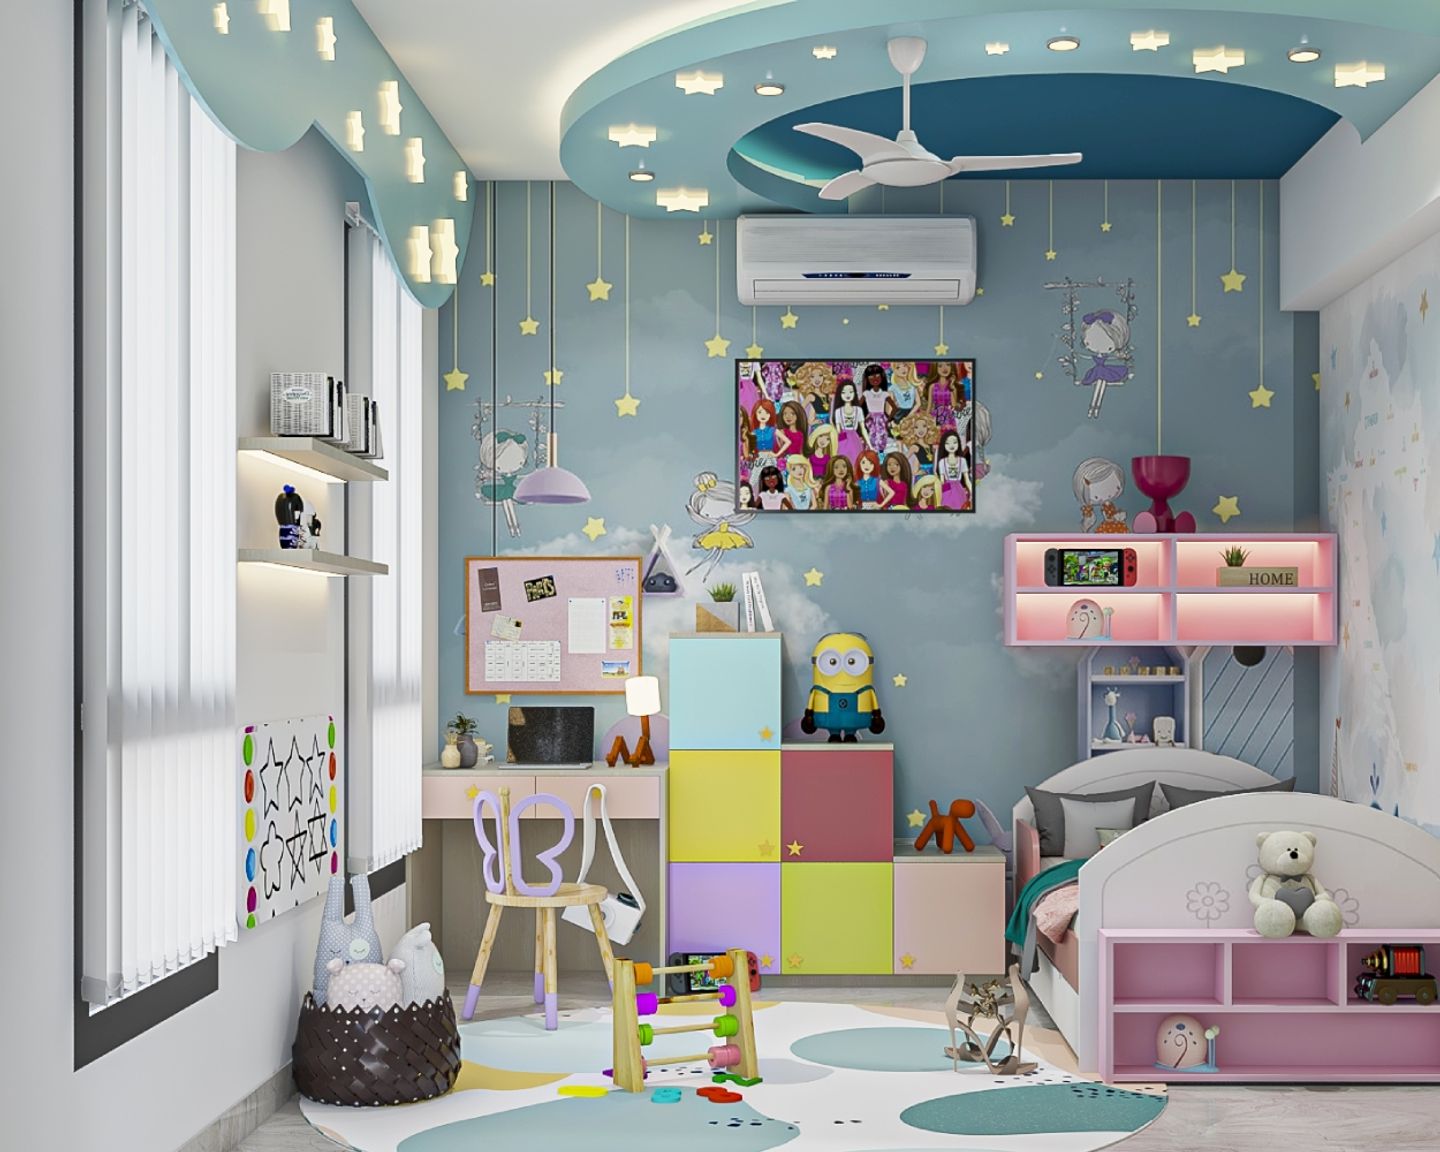 Kids Bedroom Design With Slide And Toy Basket - Livspace  Kids Bedroom Design With Grey Wardrobe And Loft - Livspace  Kids Bedroom Design With Sky Themed Wallpaper - Livspace